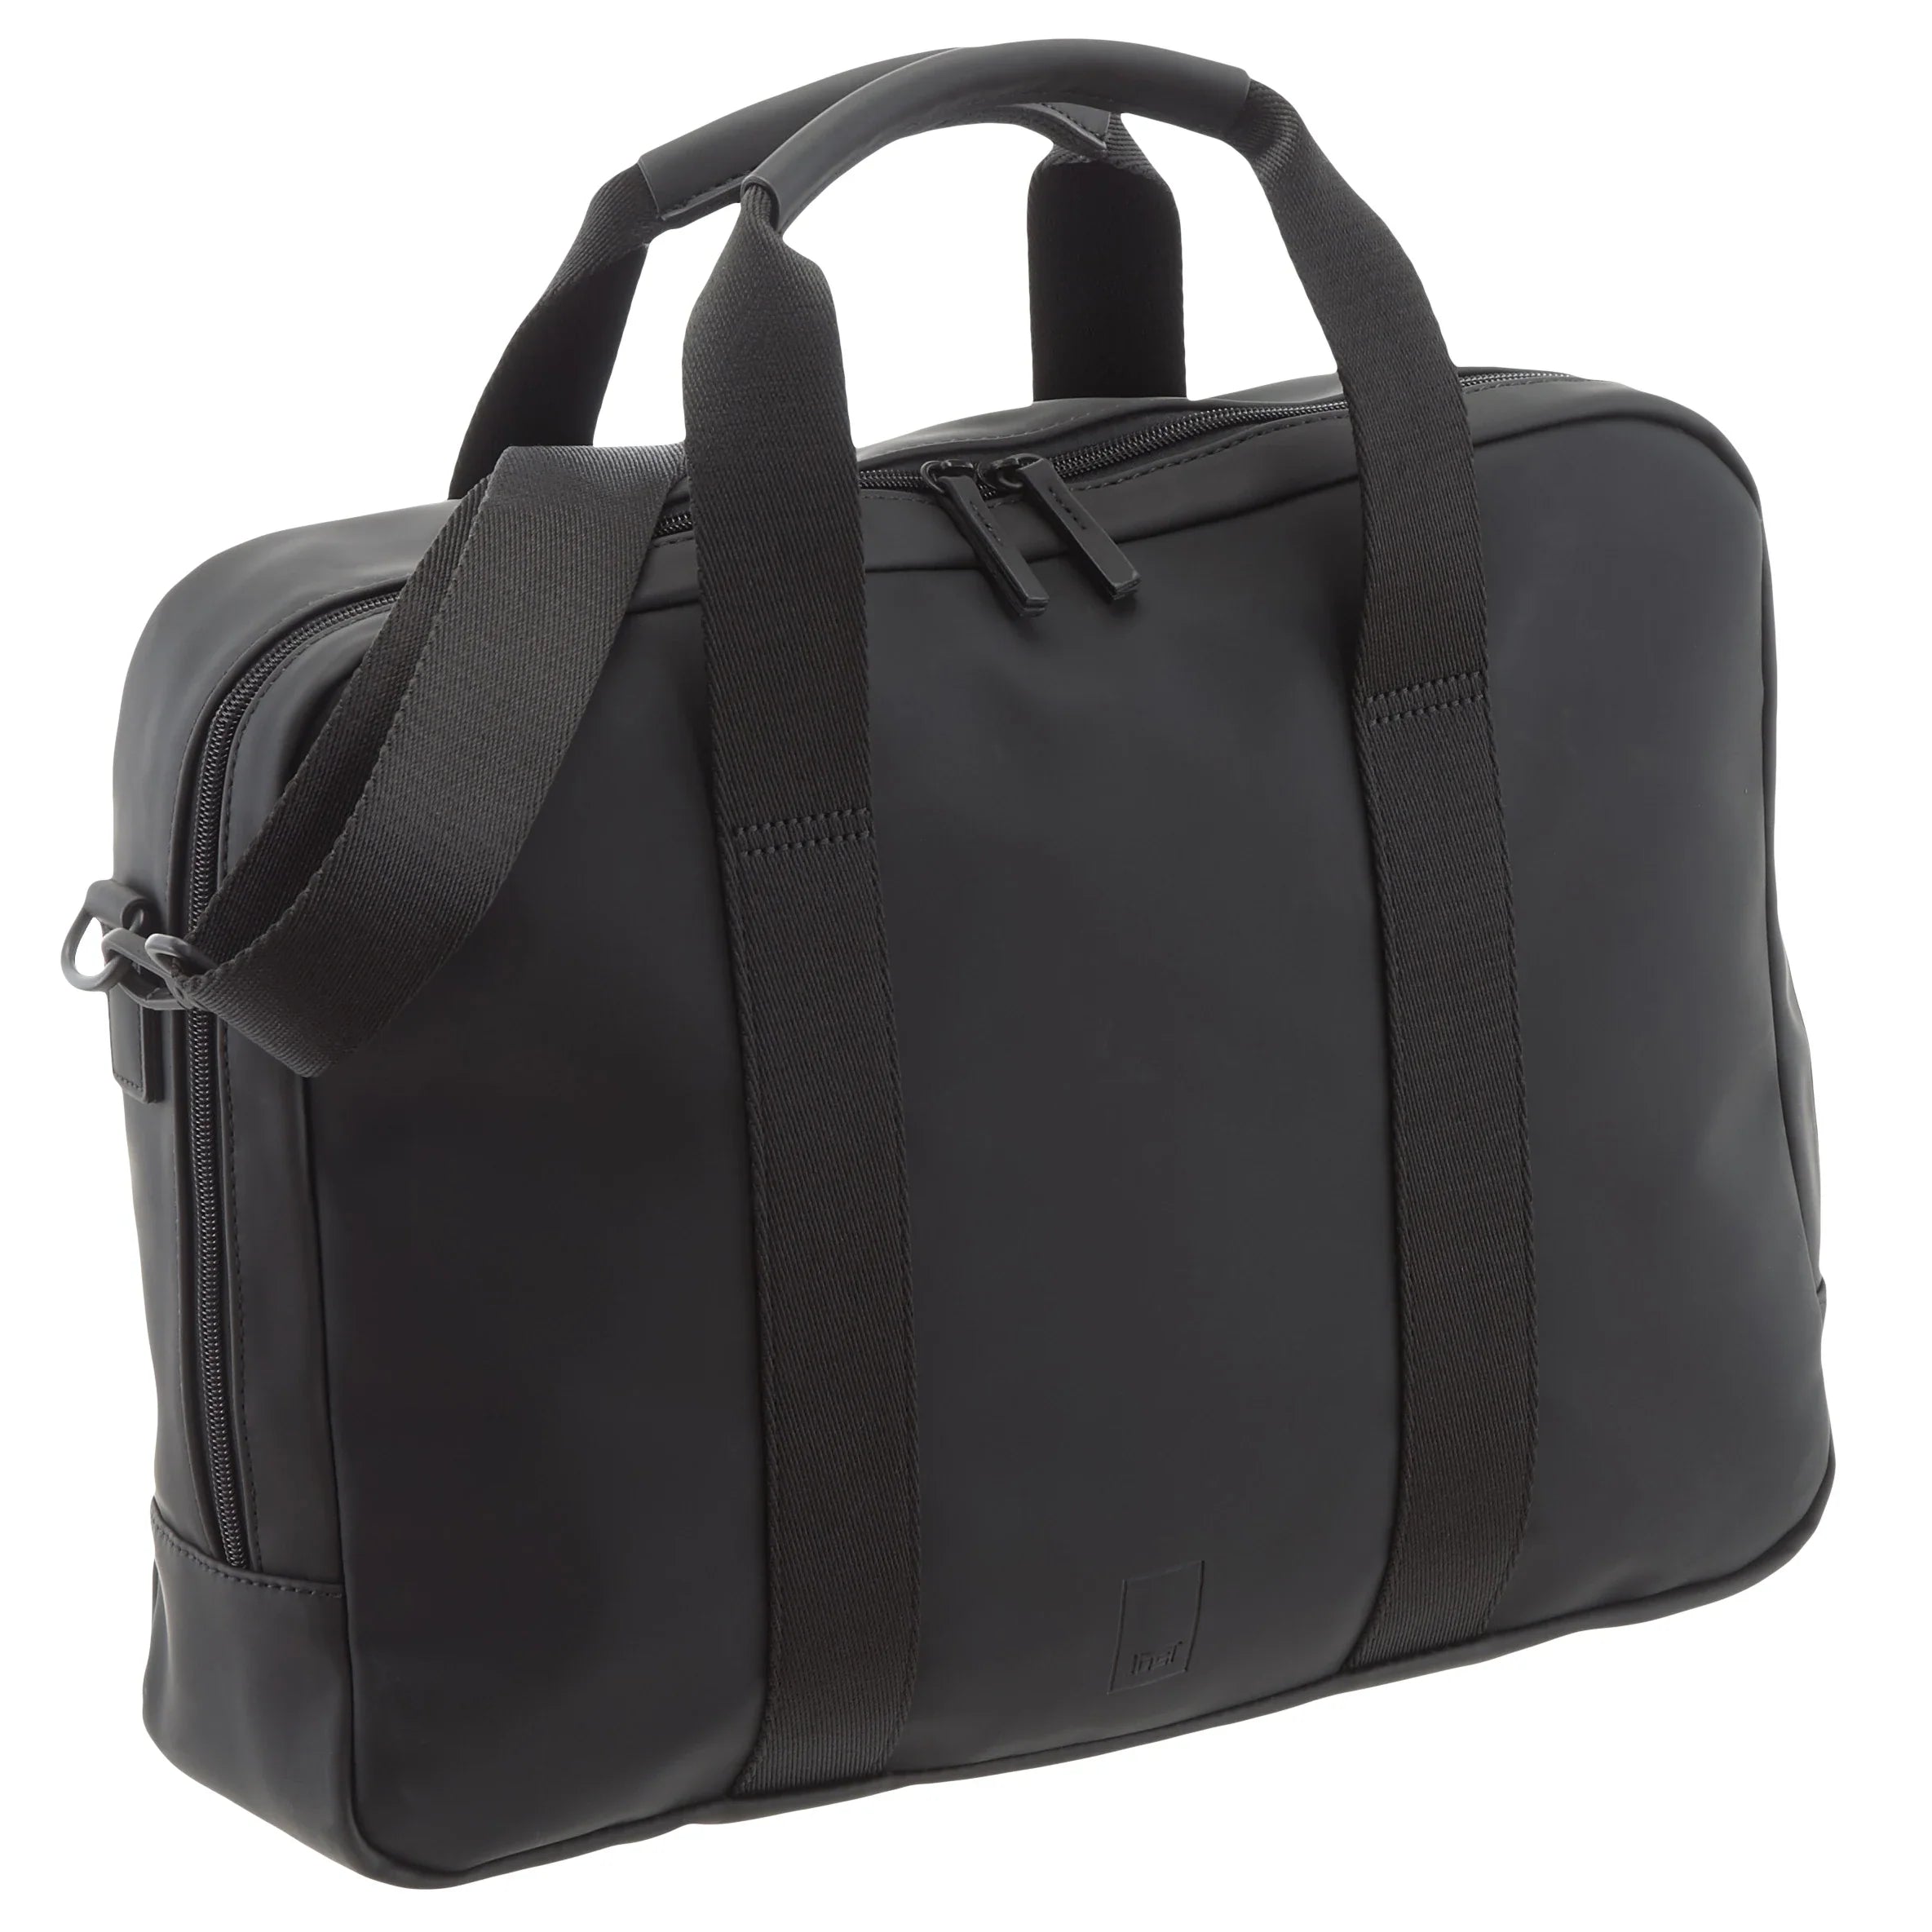 Jost Helsinki II business bag 40 cm - black